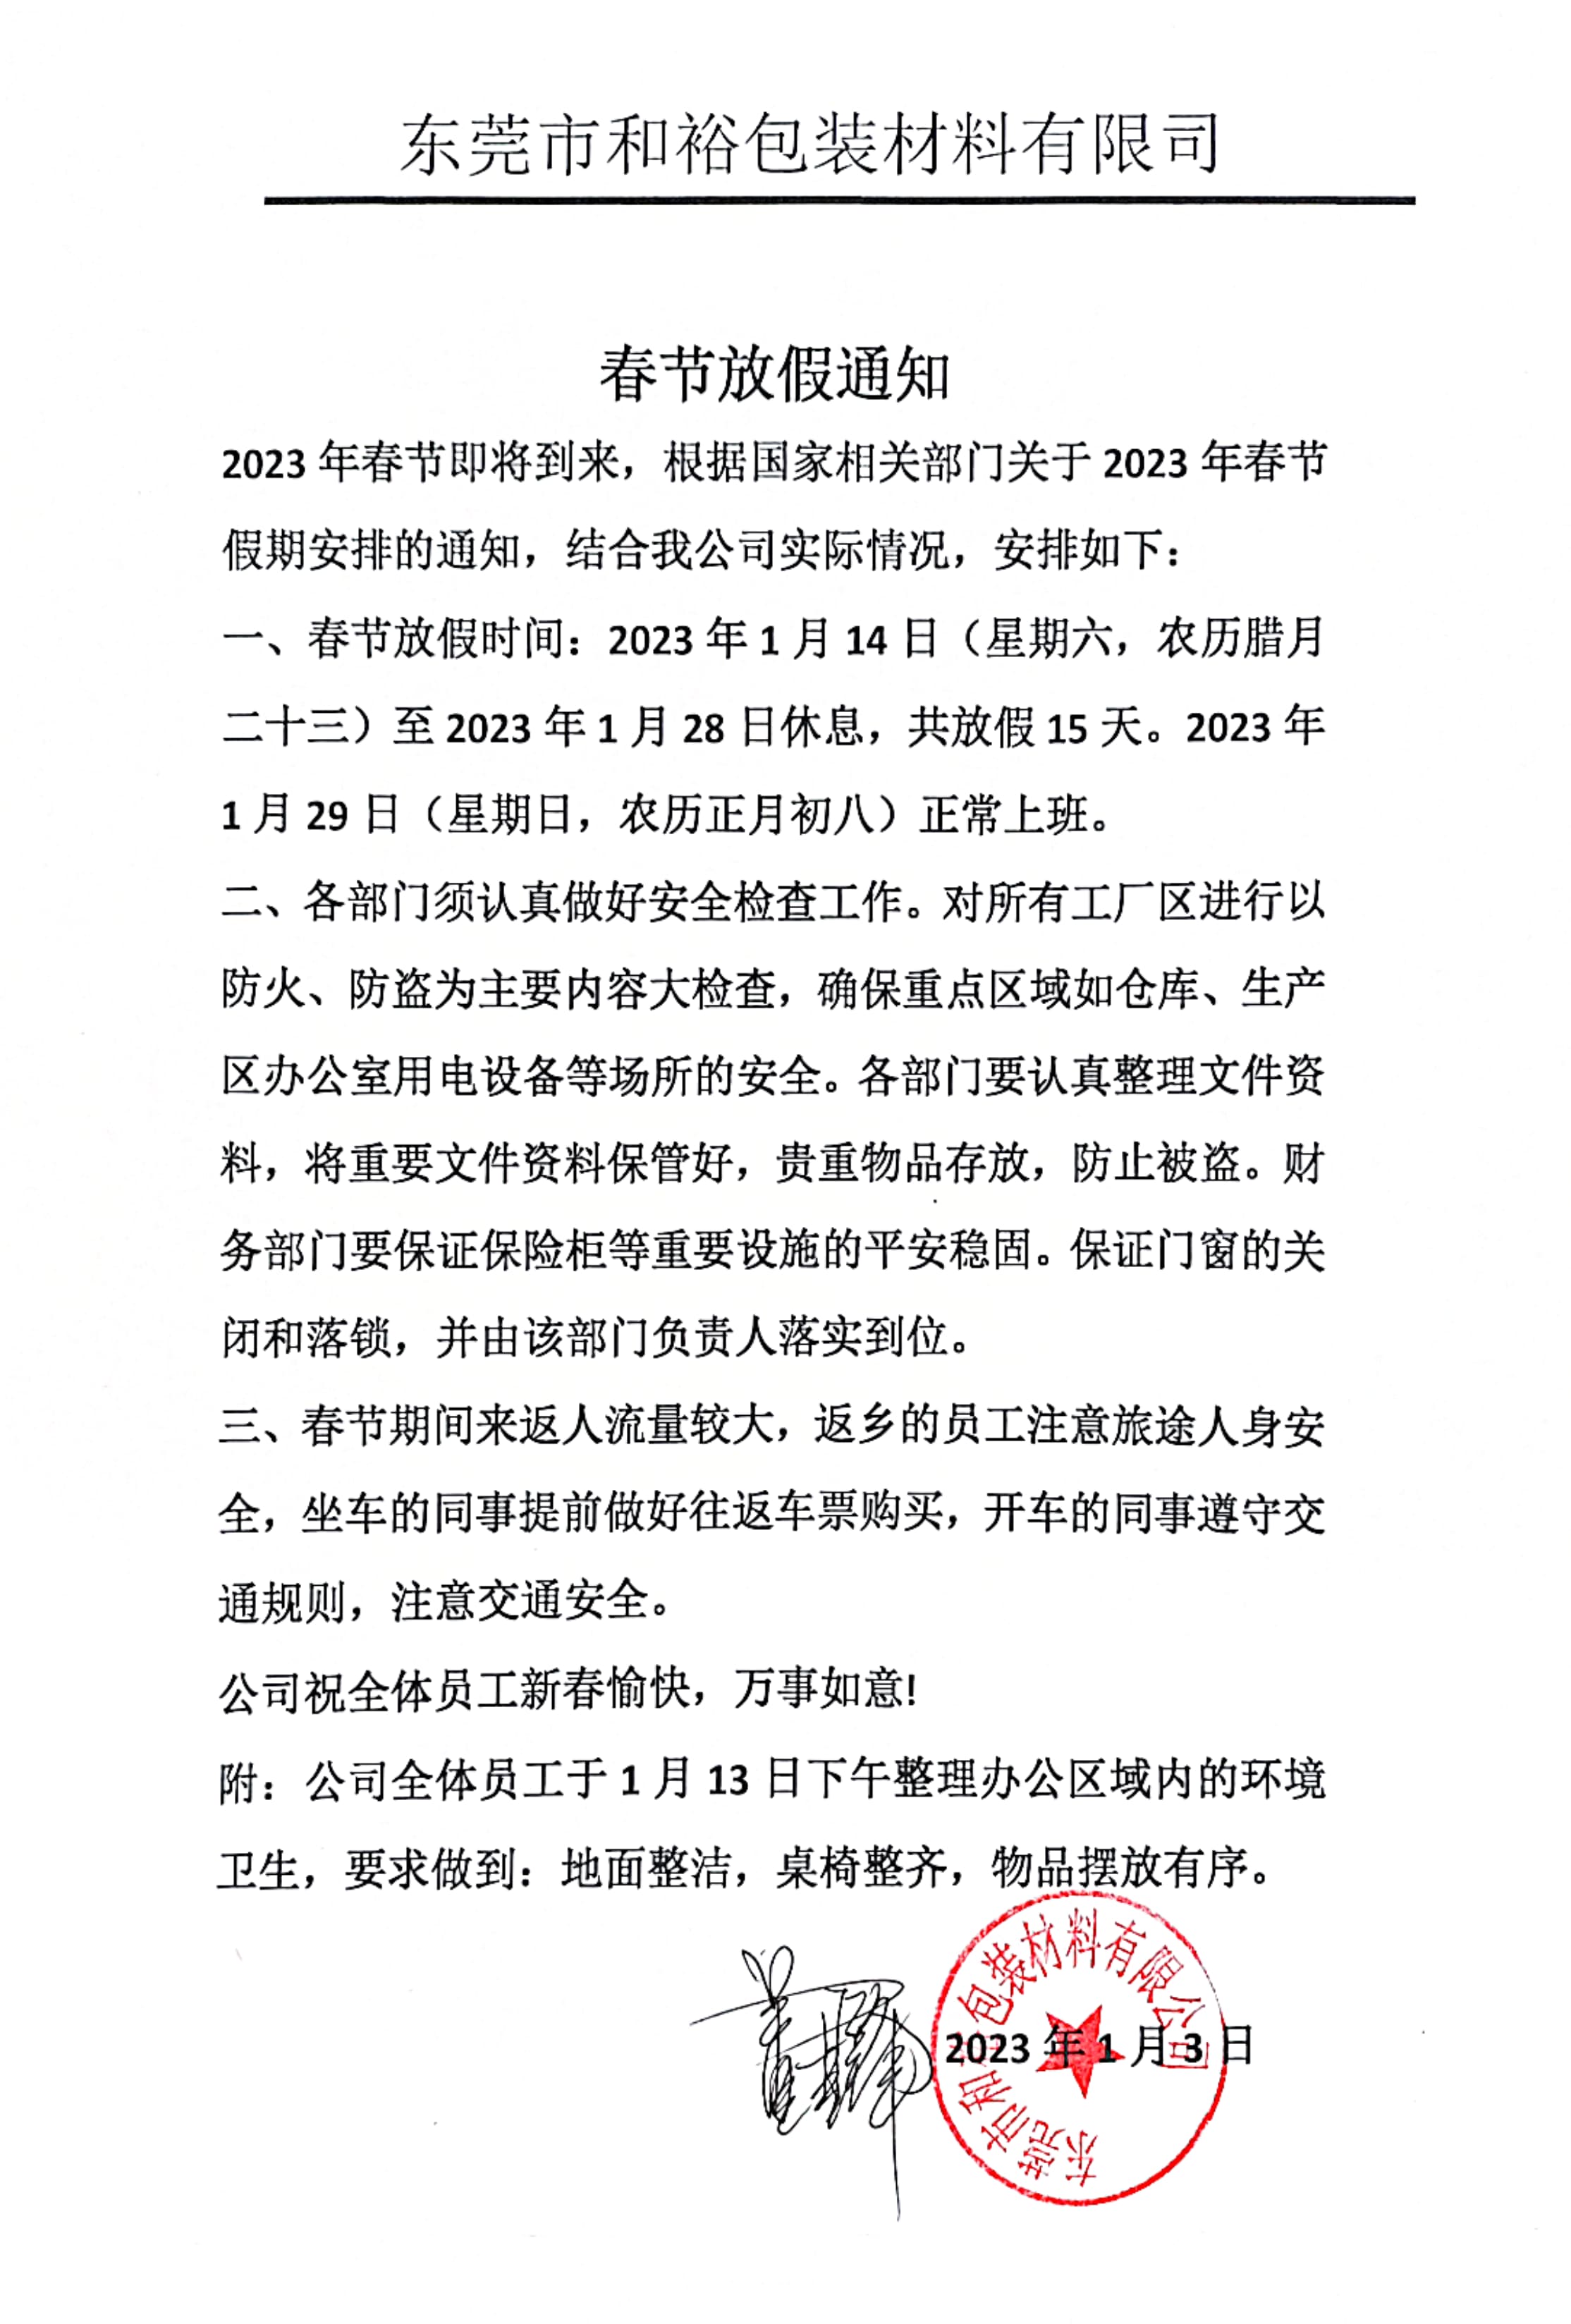 九江市2023年和裕包装春节放假通知